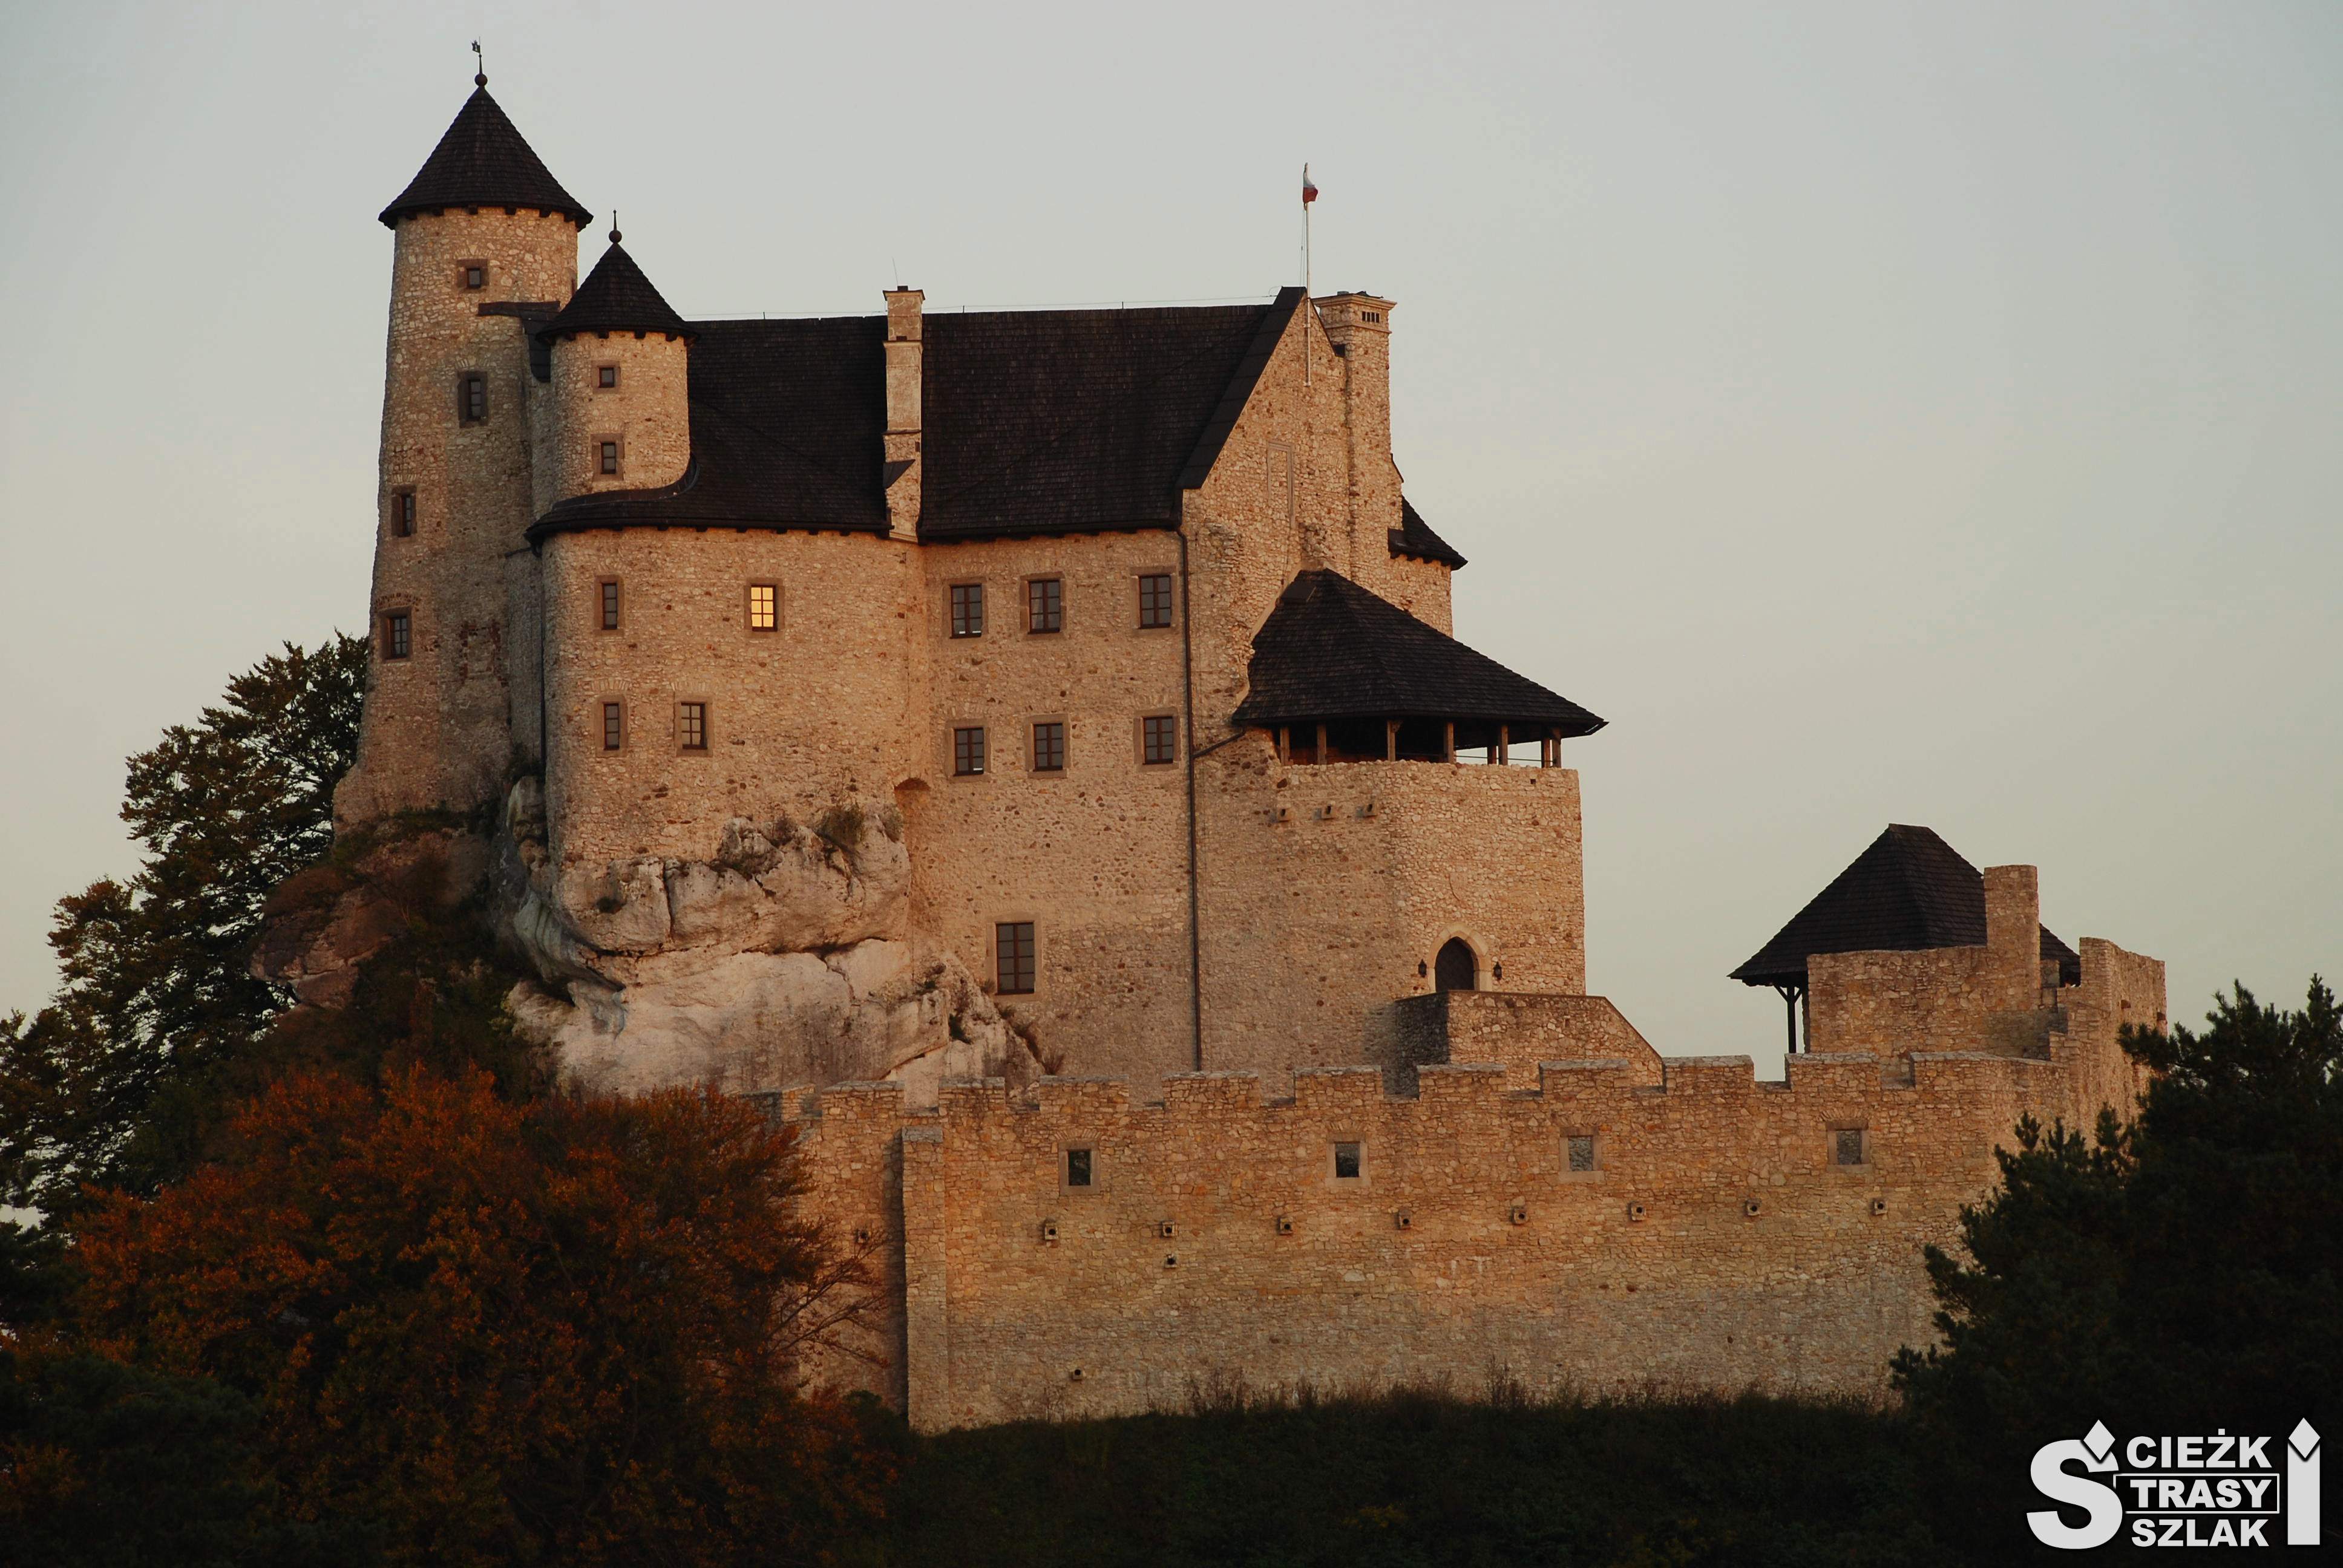 Zamek Bobolice odbudowany z ruin na skale wapiennej, z punktem widokowym, otoczony murem obronnym